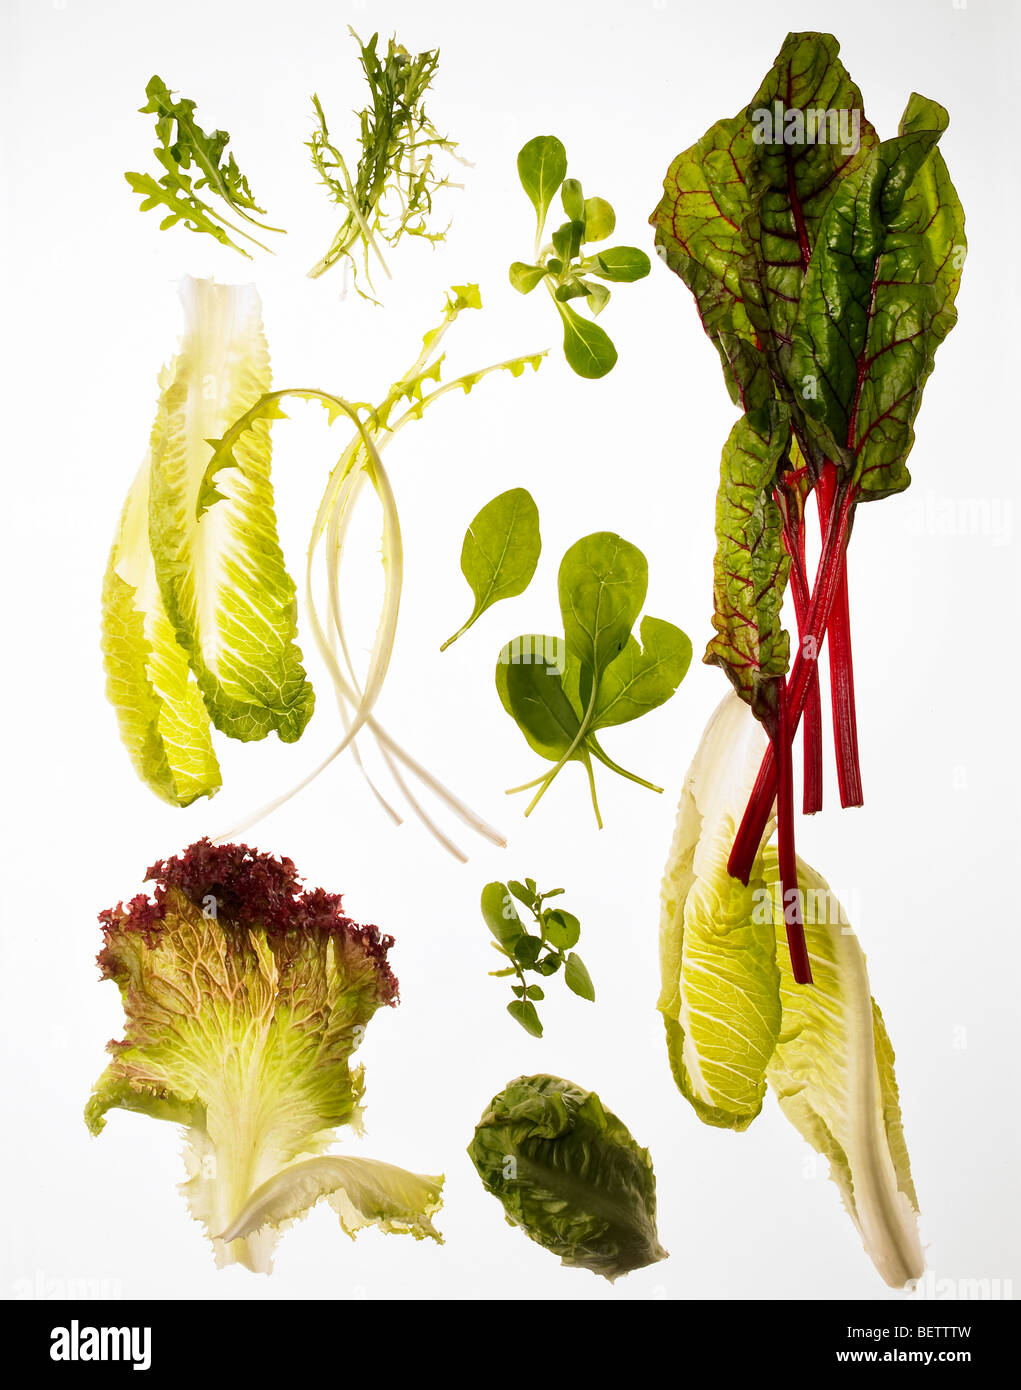 Ingrédients de la salade, des feuilles vert convient pour les salades. Banque D'Images